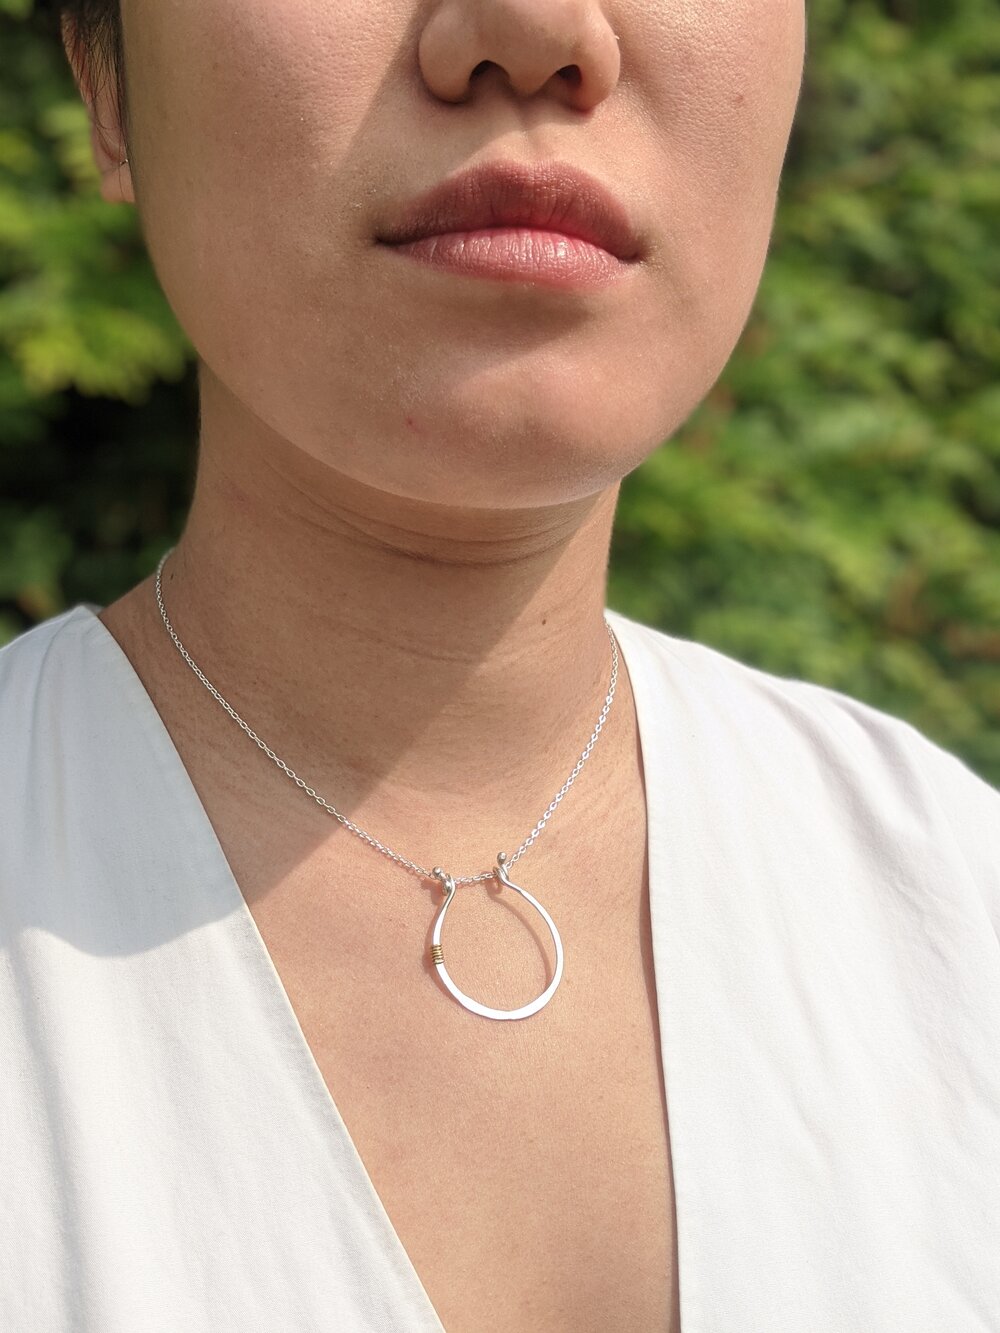 Necklace With Pendant Pendant Round Neck Pendant Jewelry Jewelry